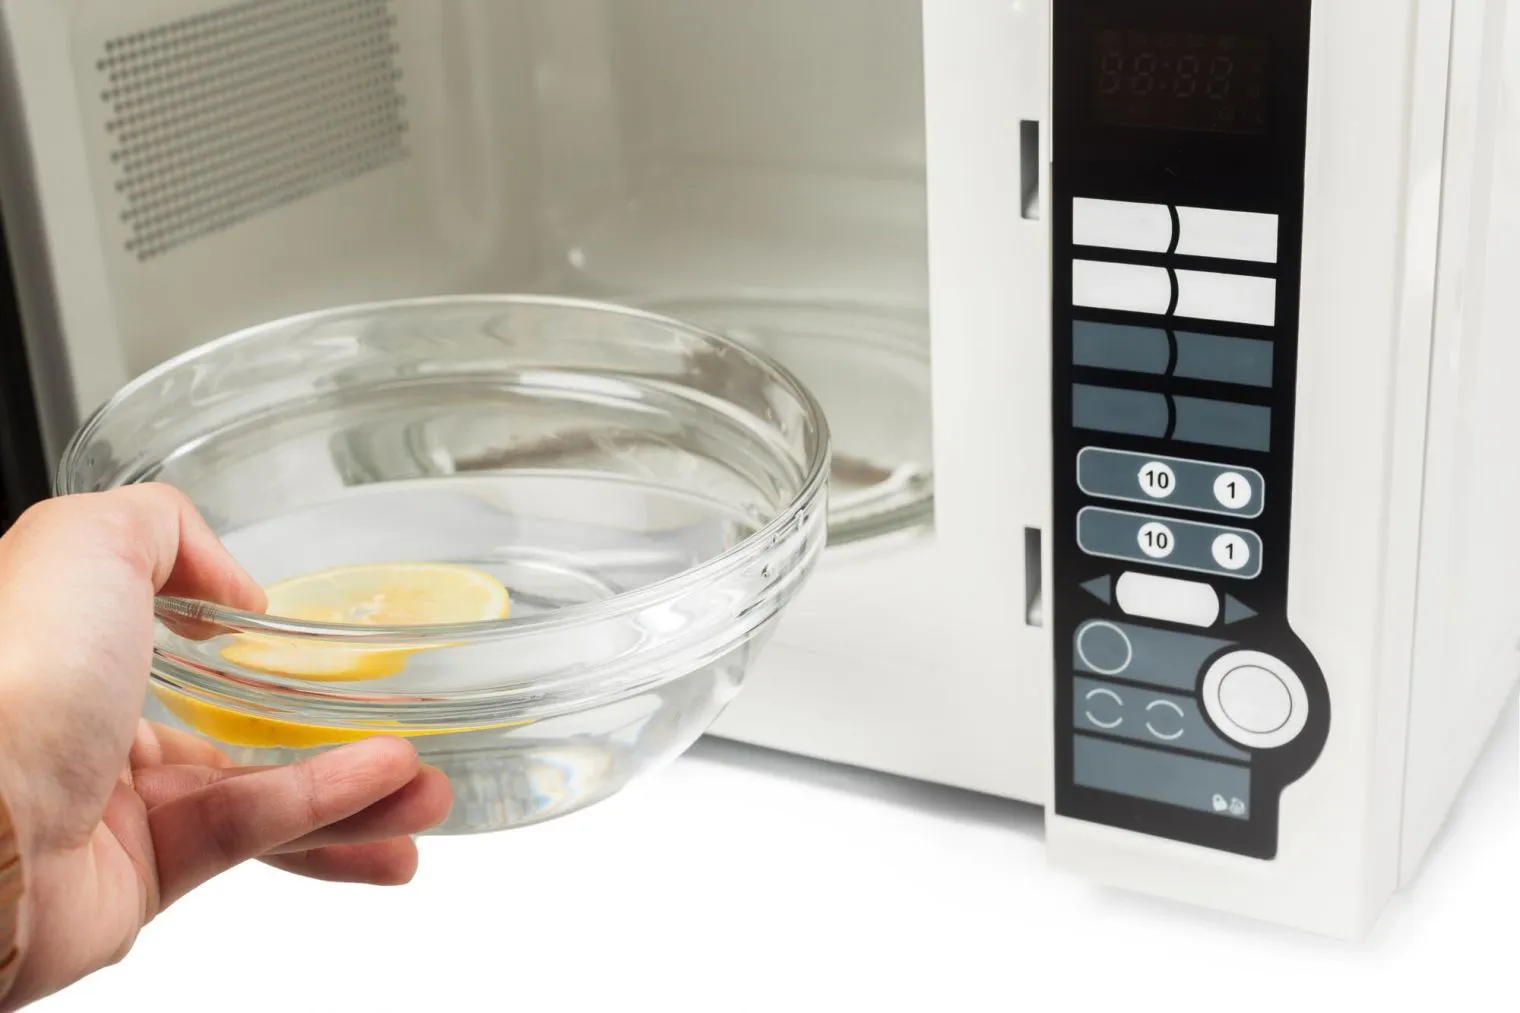 Jenis Wadah yang Tidak Boleh Masuk Microwave